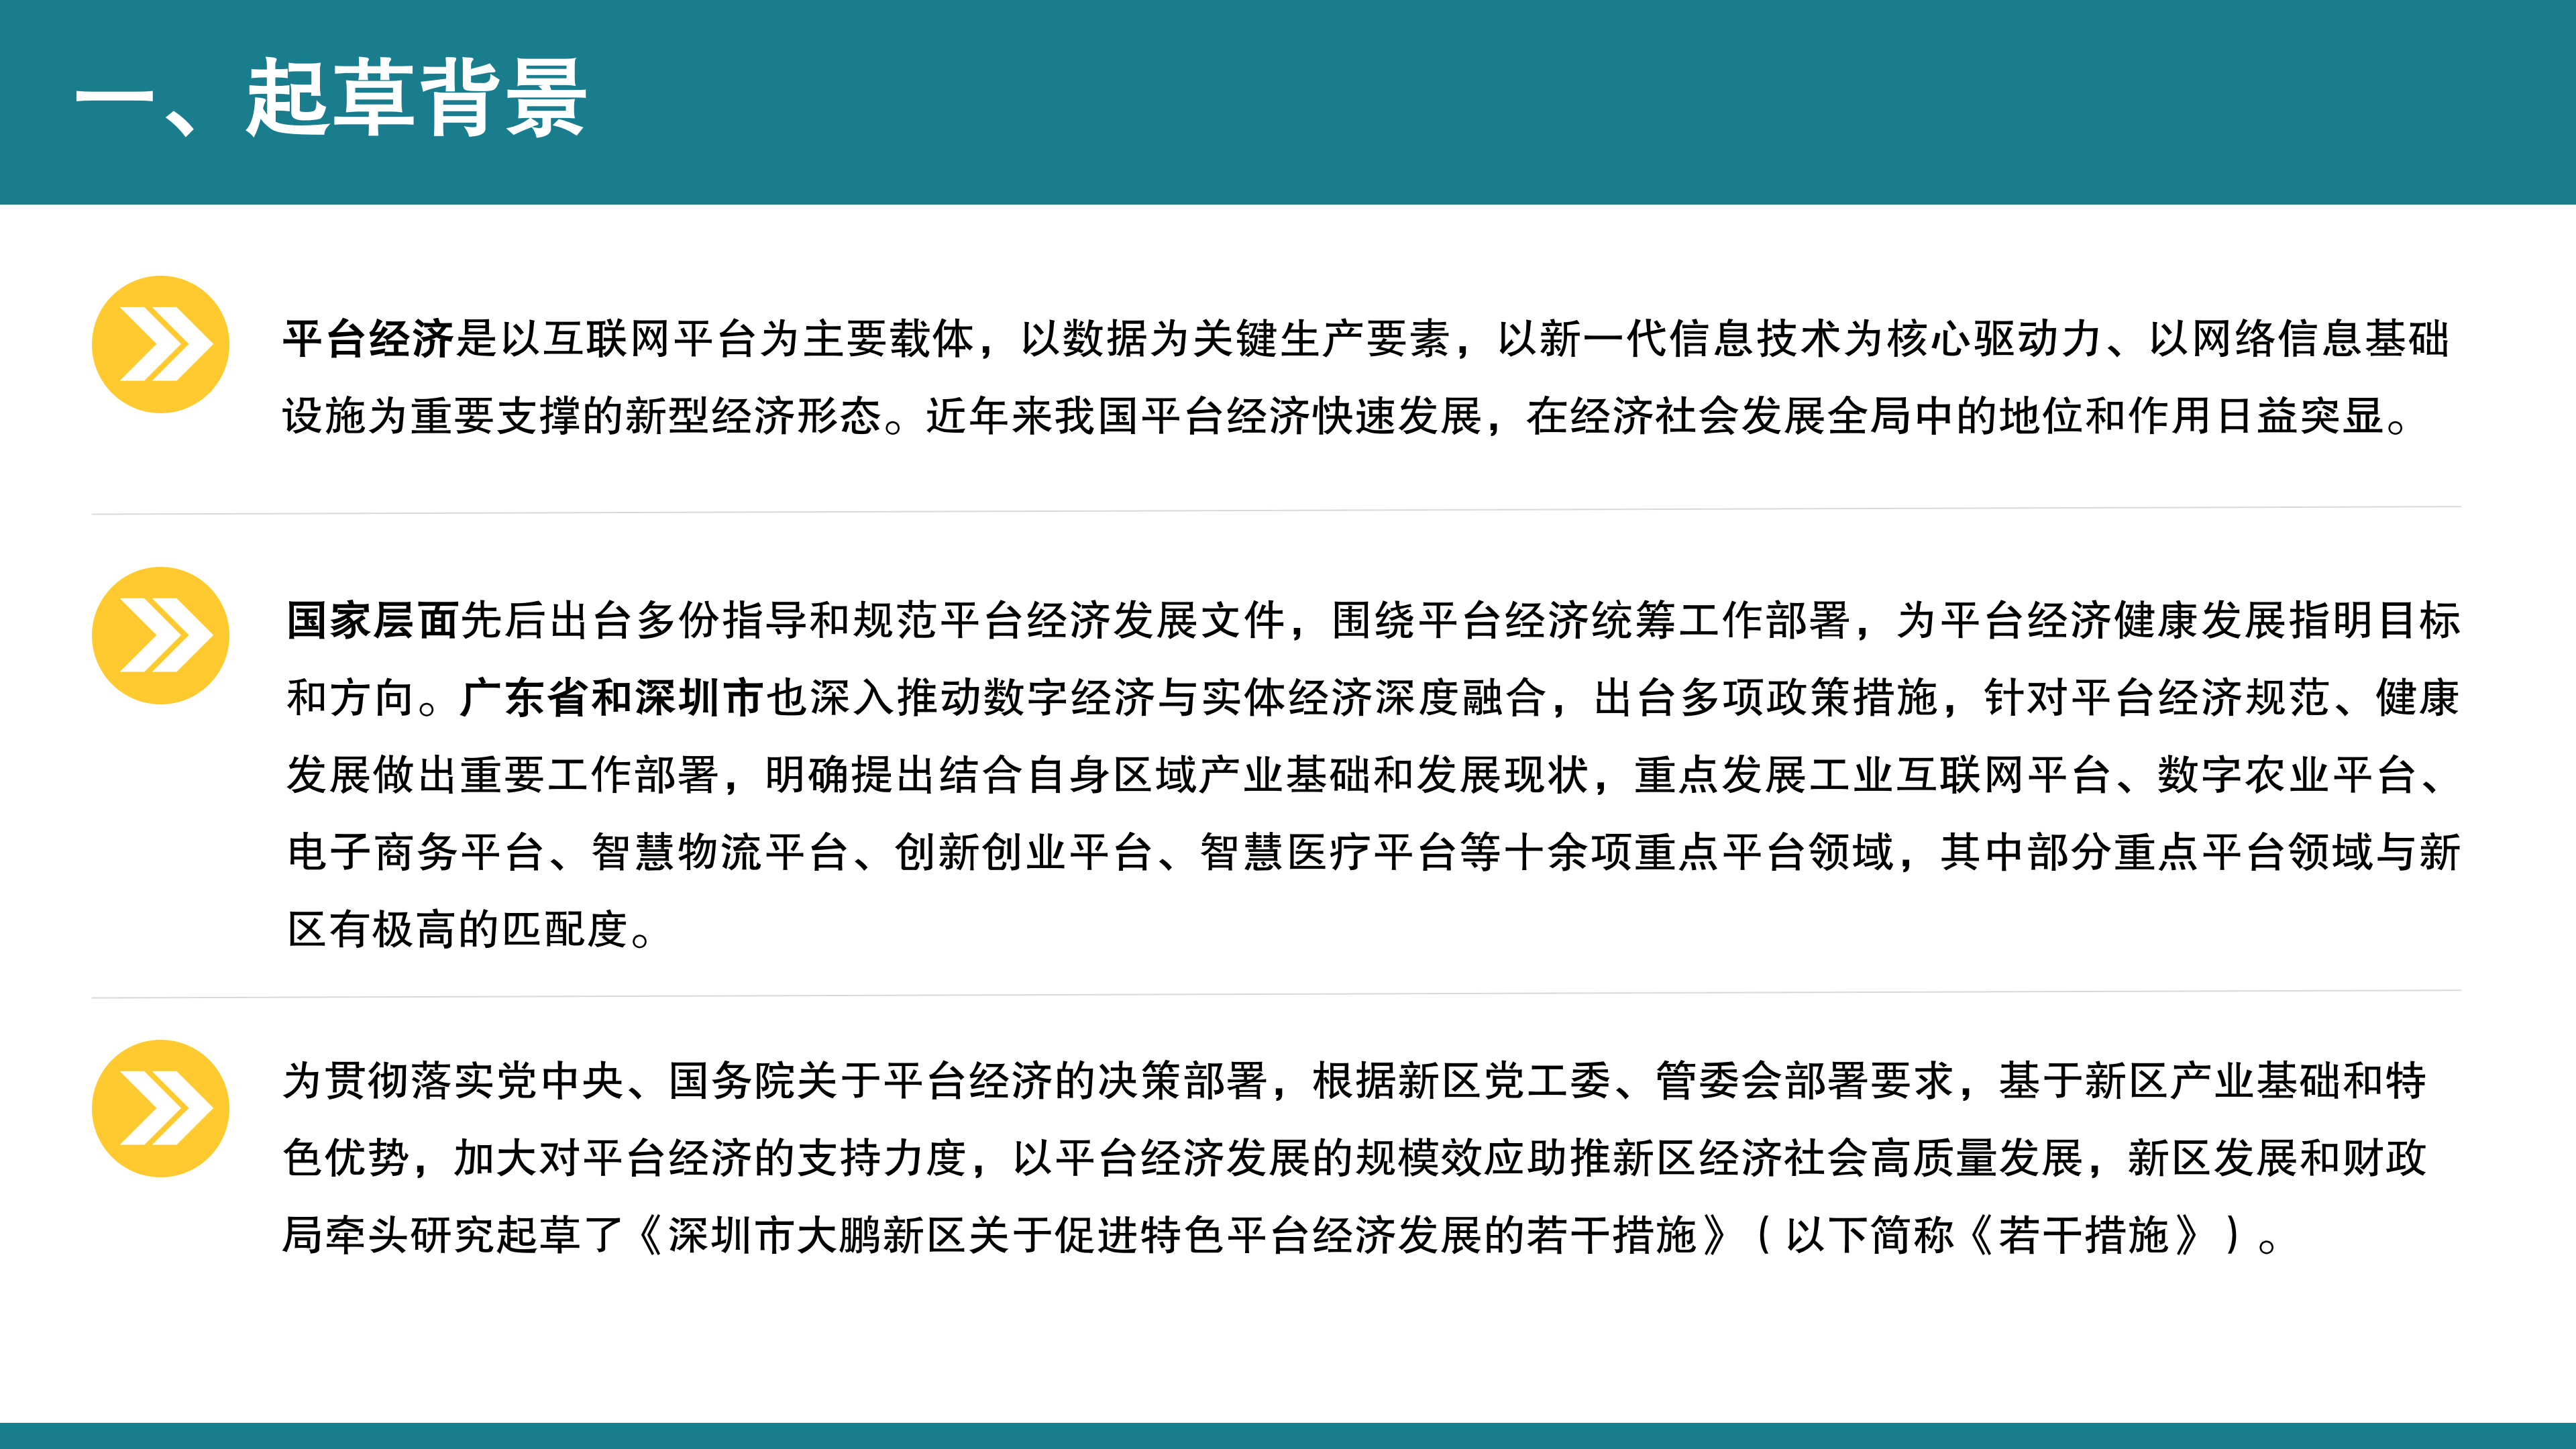 【公示版】《深圳市大鹏新区关于促进特色平台经济发展的若干措施》政策解读_03.png